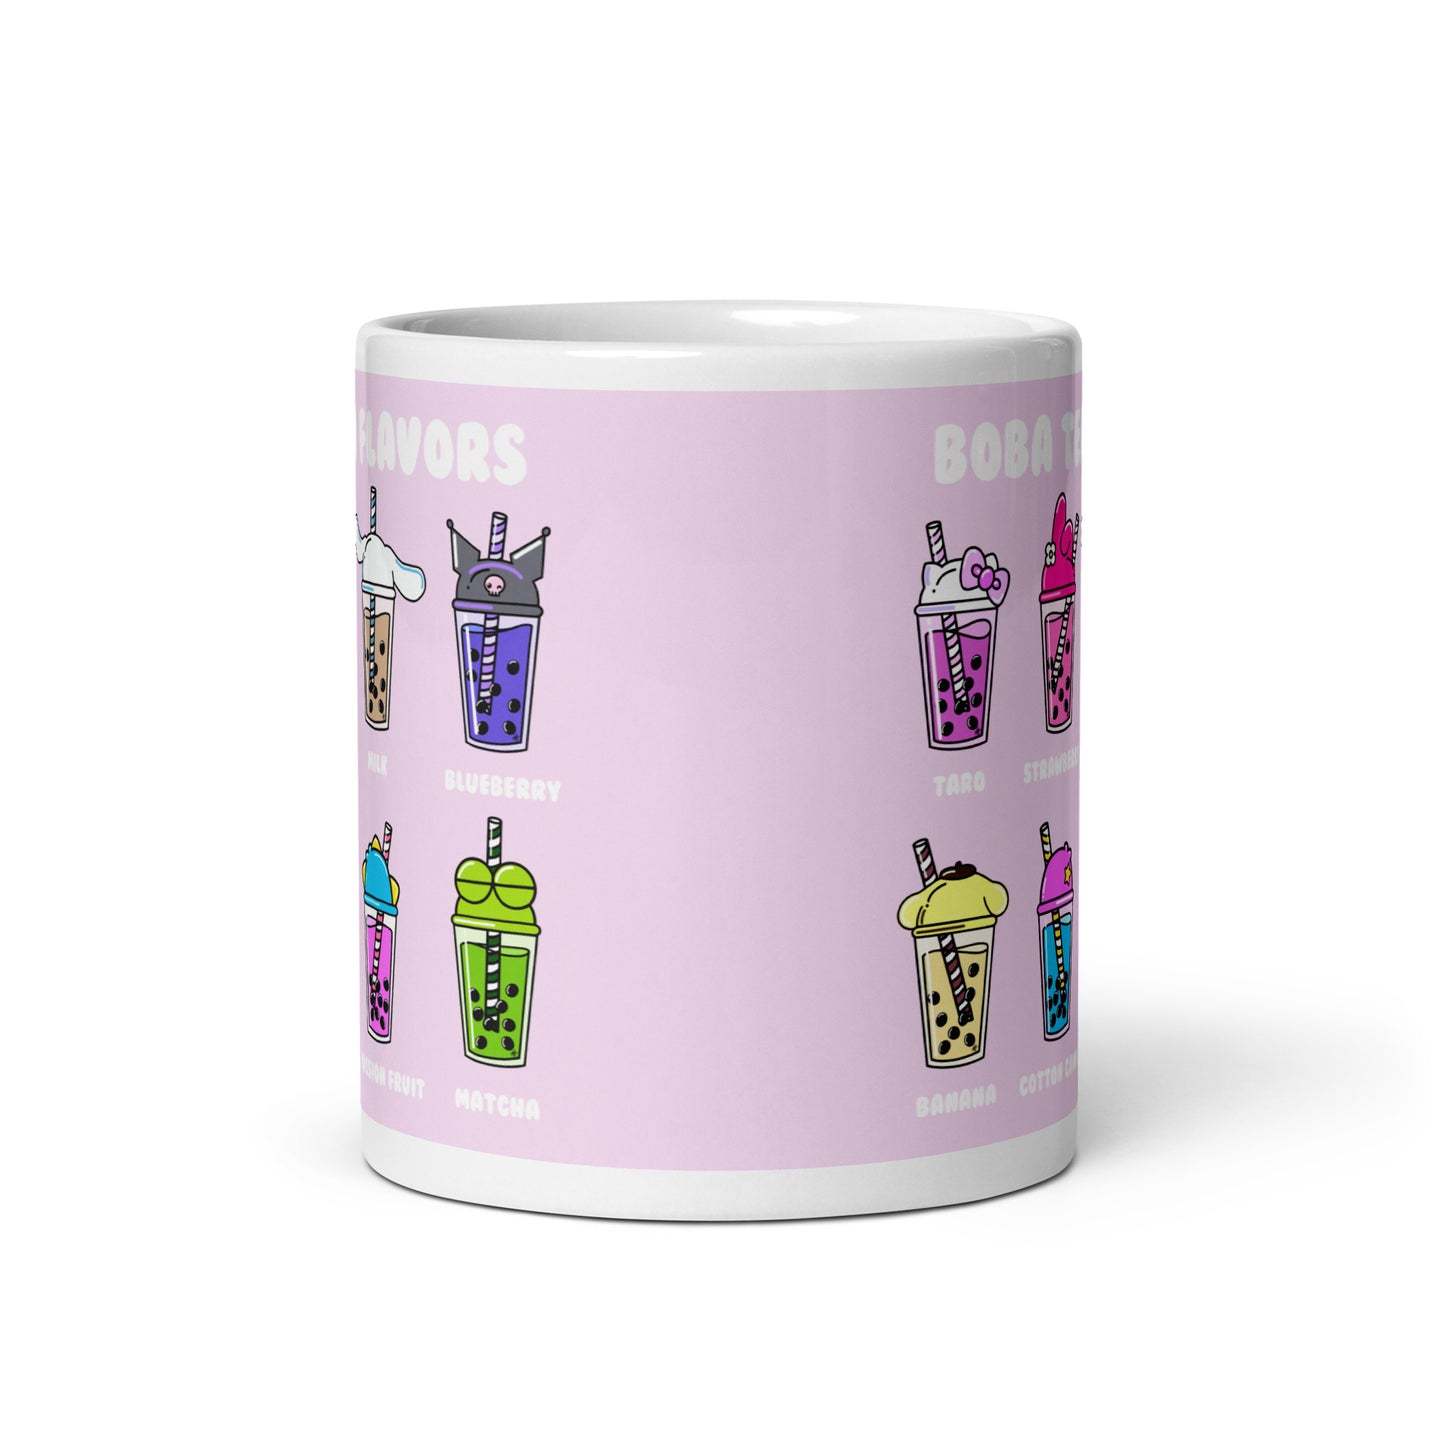 Boba Tea Flavors mug